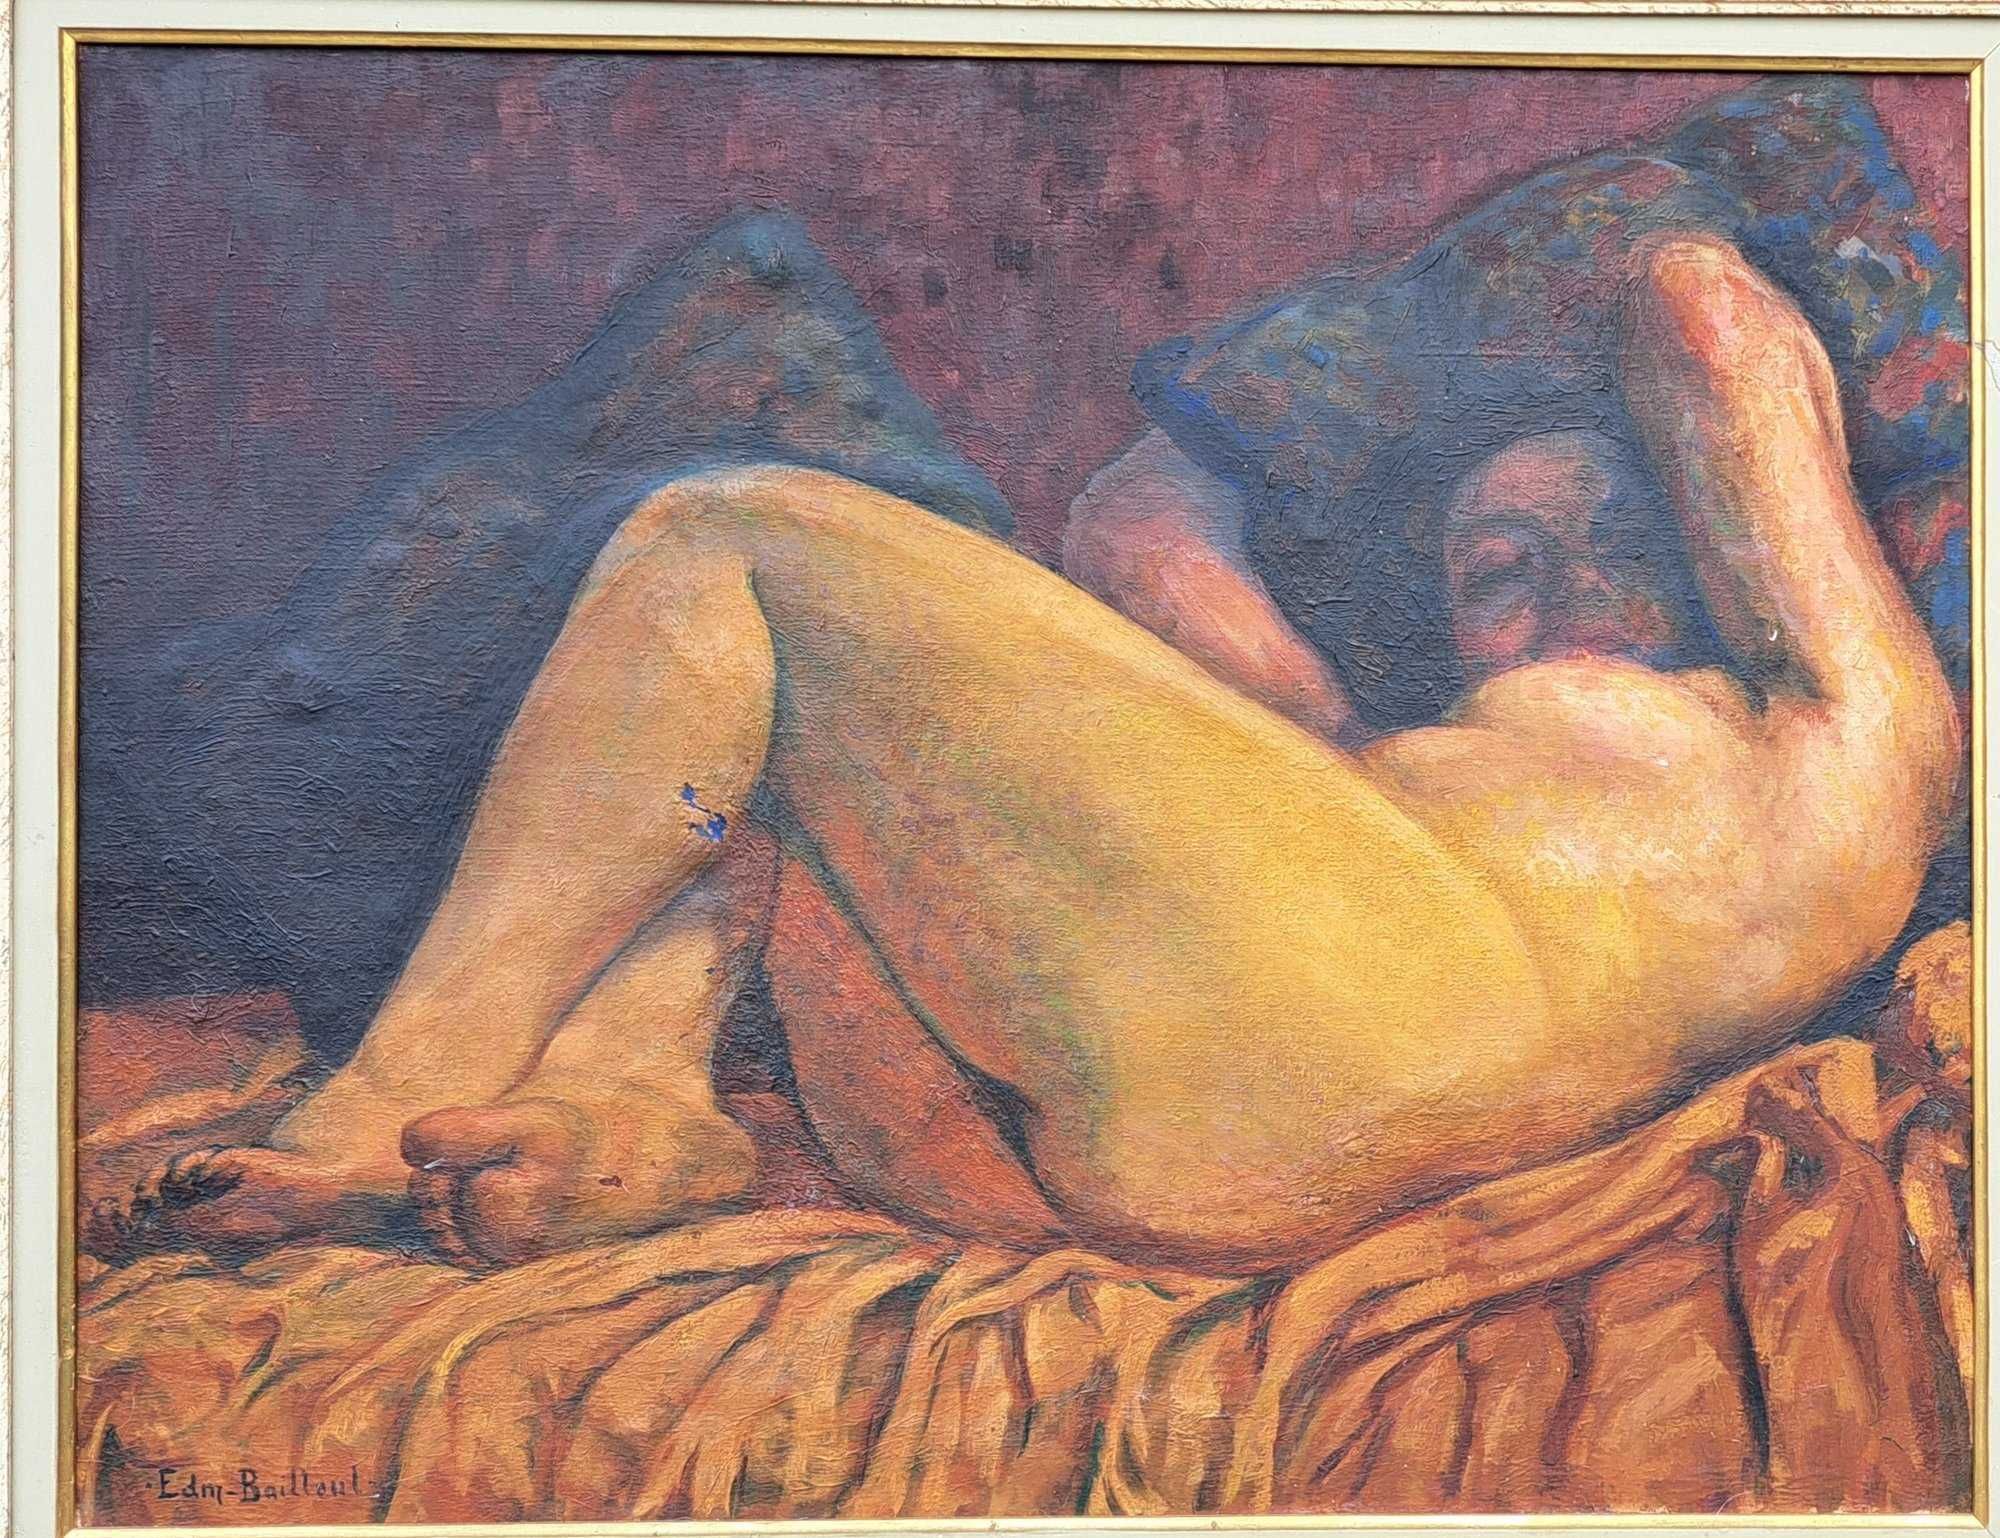 Edmond Bailleau - Nud, ulei pe panza, Franta